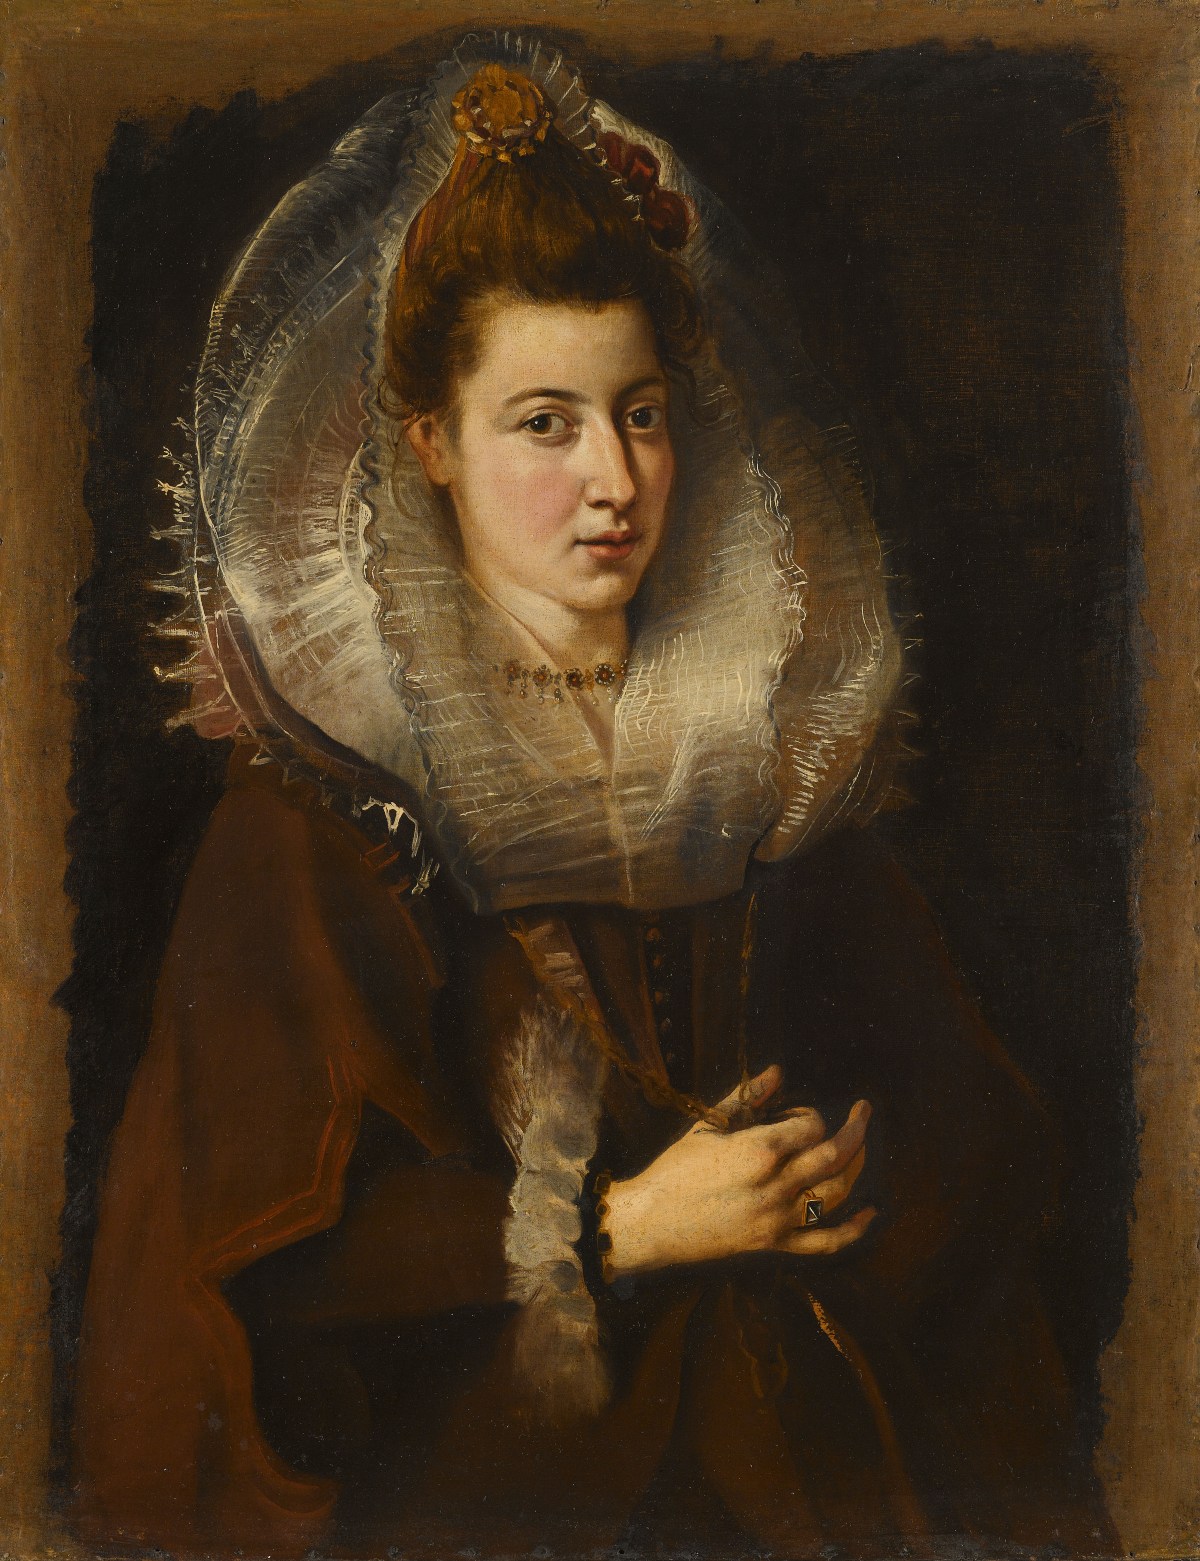 Peter Paul Rubens (1577 - 1640) Ritratto di giovane donna con una catena (1605 – 1606)ng woman holding a chain (1605 – 1606)